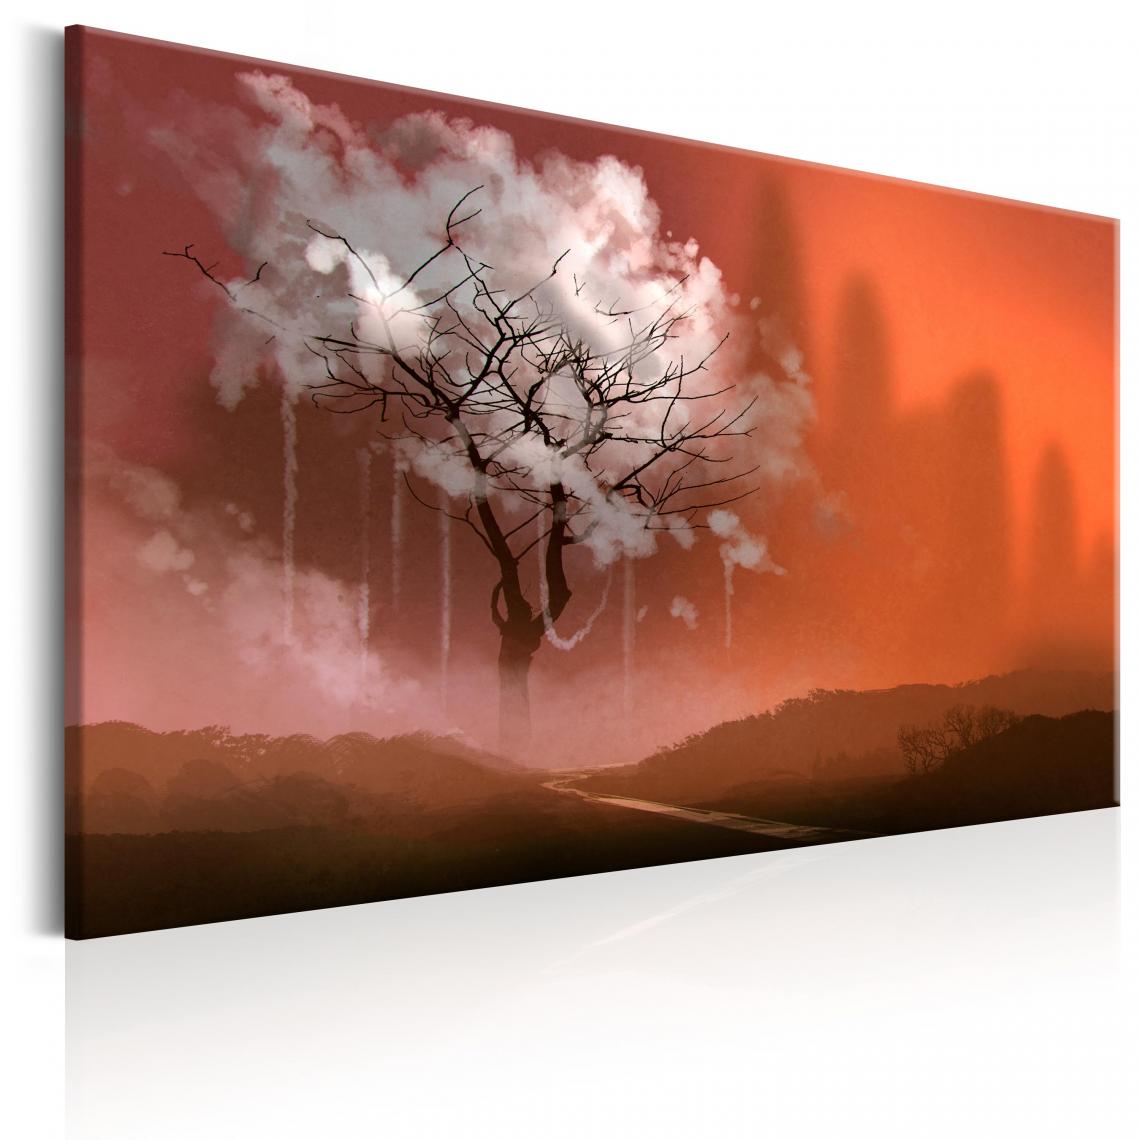 Decoshop26 - Tableau sur toile décoration murale image imprimée cadre en bois à suspendre Pays des rêves 60x40 cm 11_0005958 - Tableaux, peintures